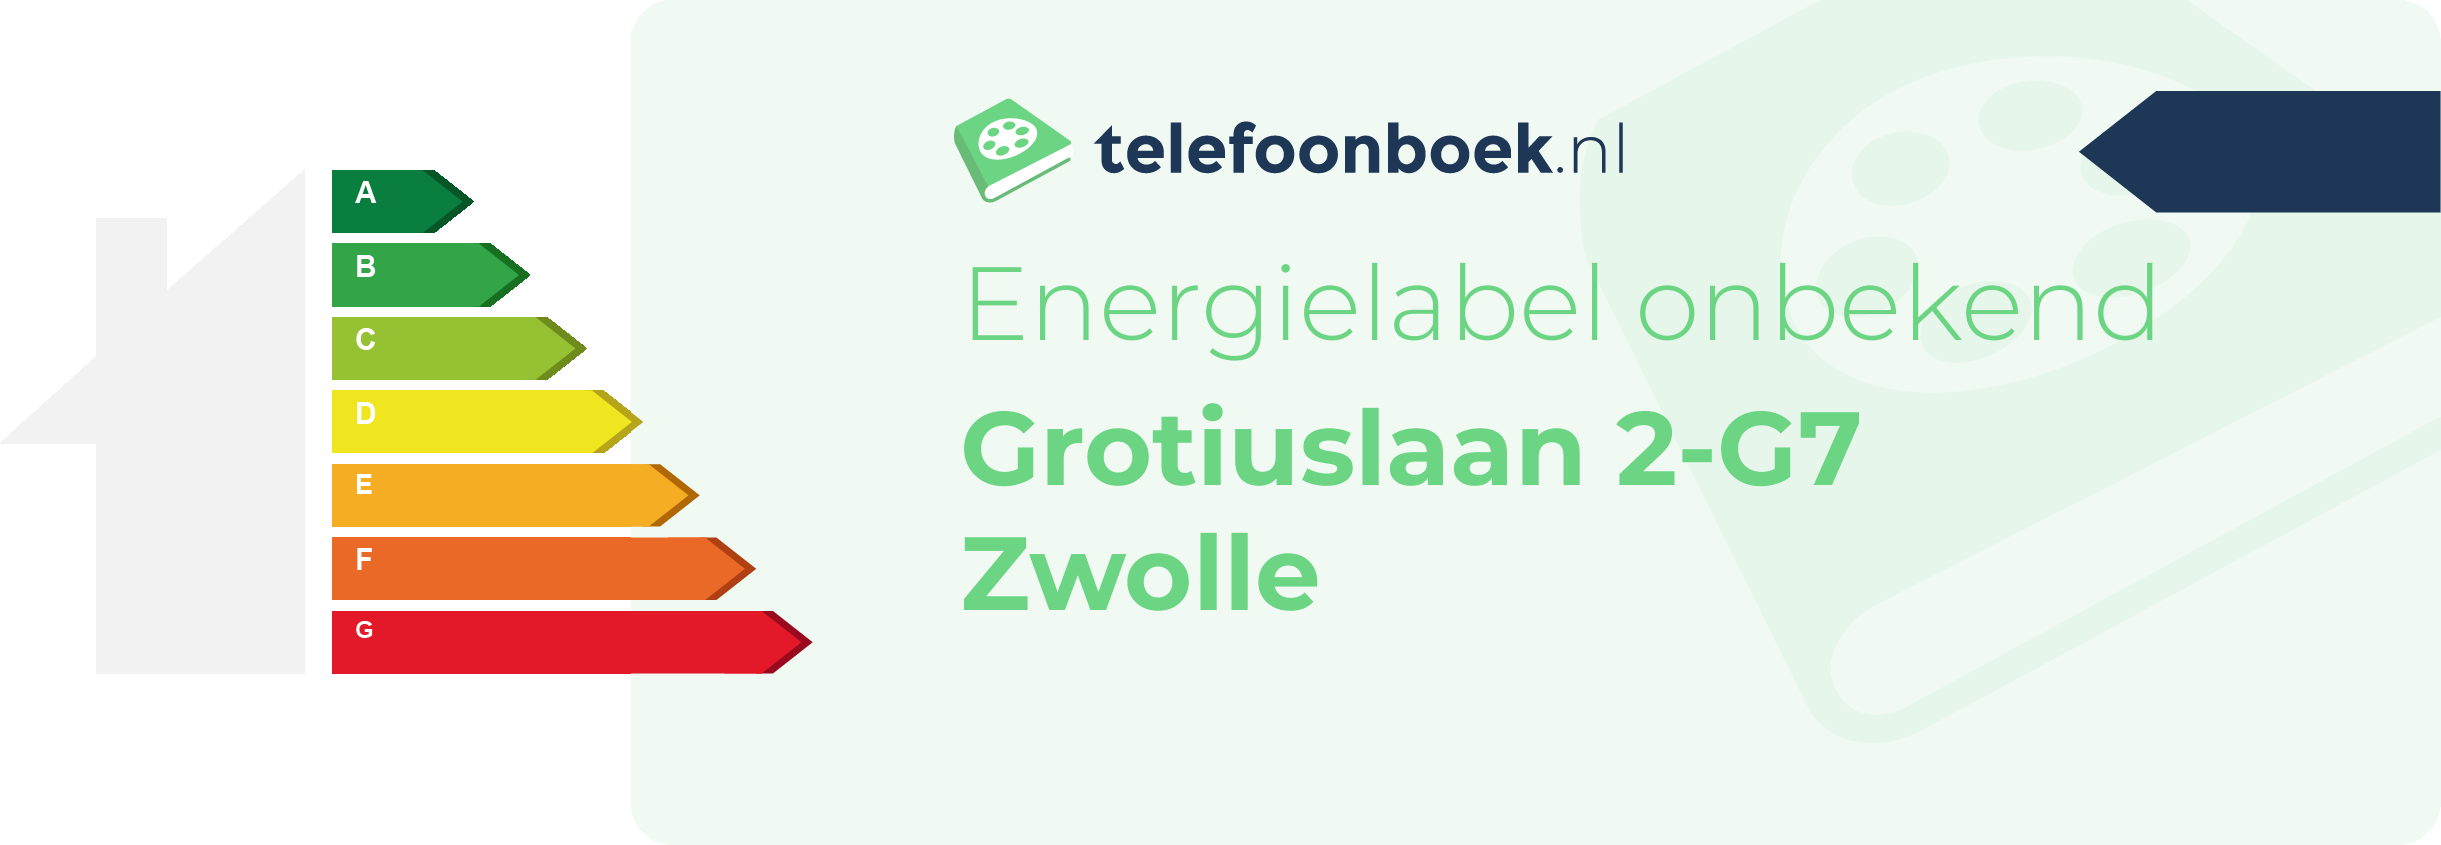 Energielabel Grotiuslaan 2-G7 Zwolle